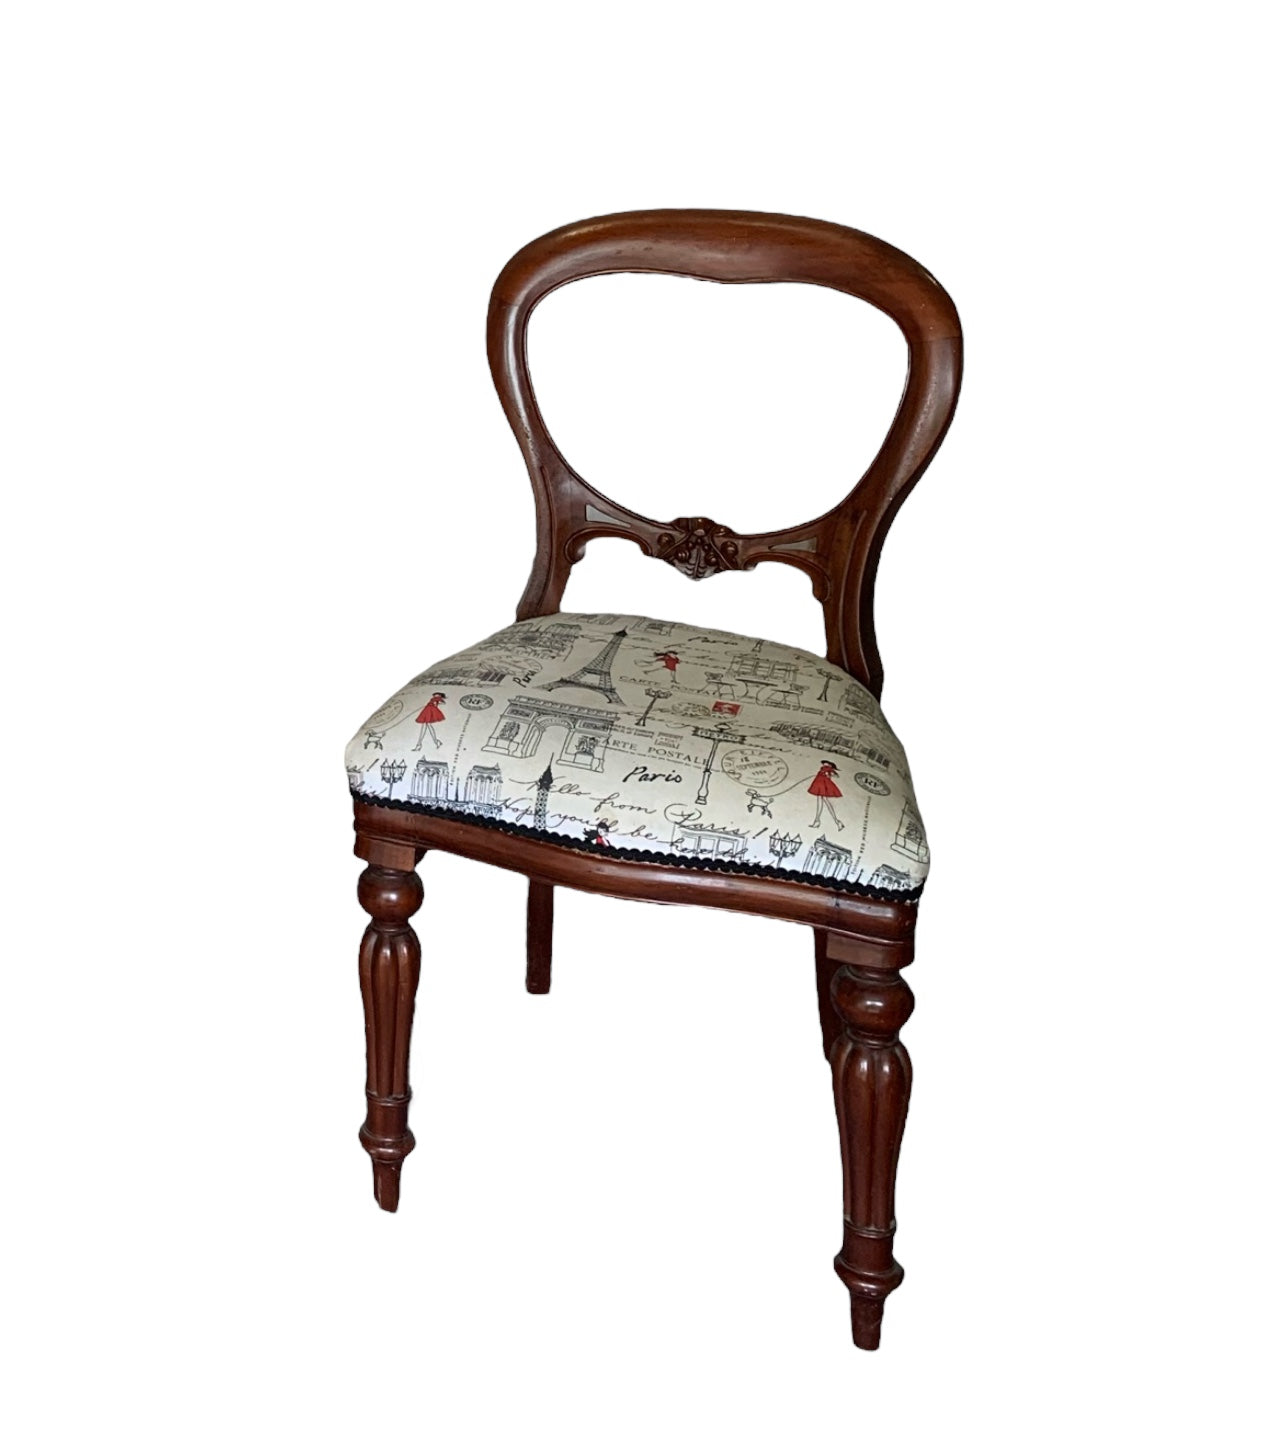 Vintage Chair Paris Print Upholstery x2 Available Rockhampton Vintage Hire